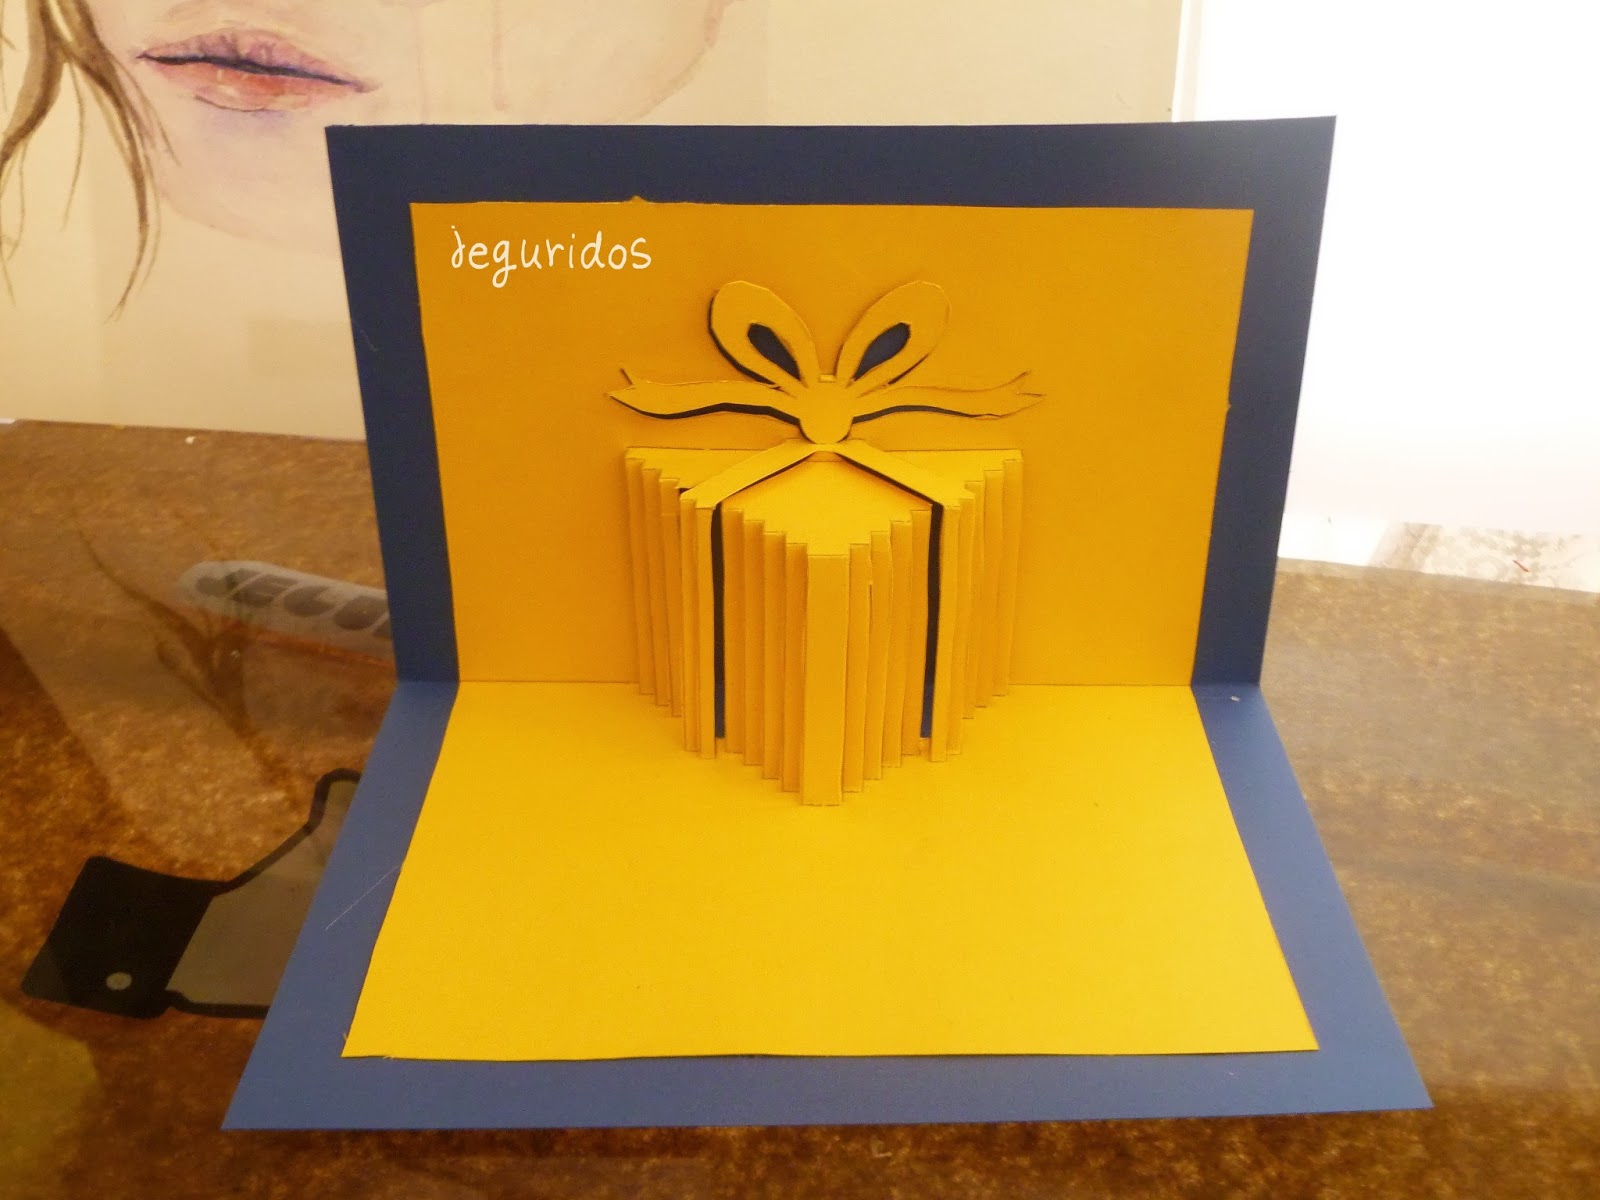 Tengo una clase de ingles recepción Cargado tarjeta pop up caja de regalo Cumpleaños – Jeguridos